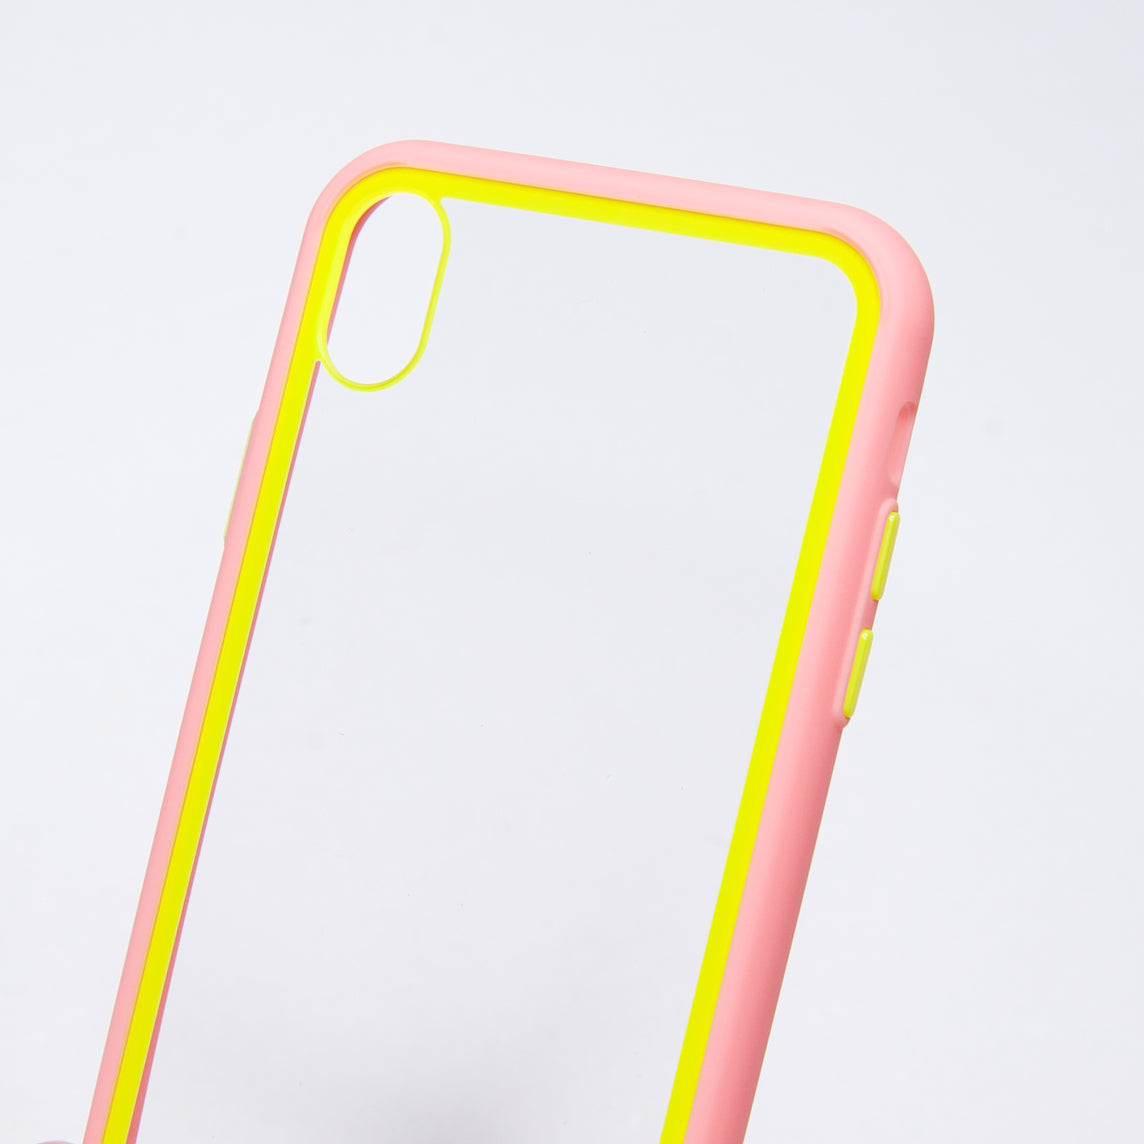 estuches transparente el rey apple iphone xs max color rosado / transparente